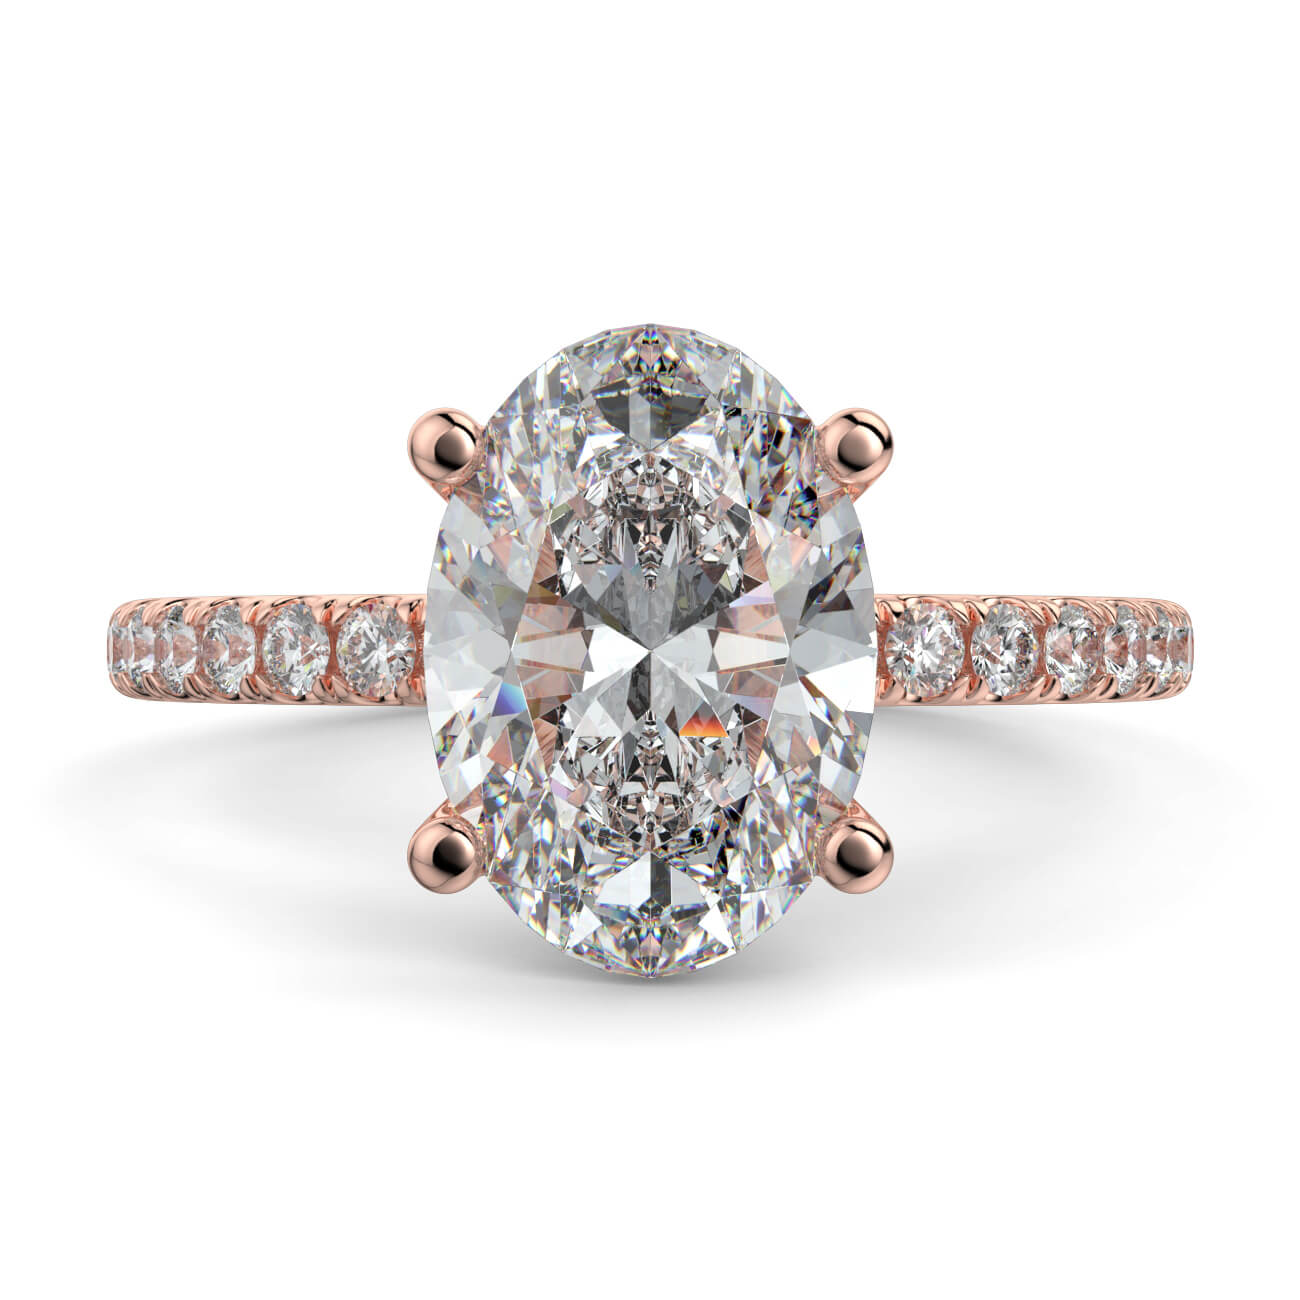 Delicate ‘Liat’ Oval Shape Diamond Engagement Ring in 18k Rose Gold – Australian Diamond Network